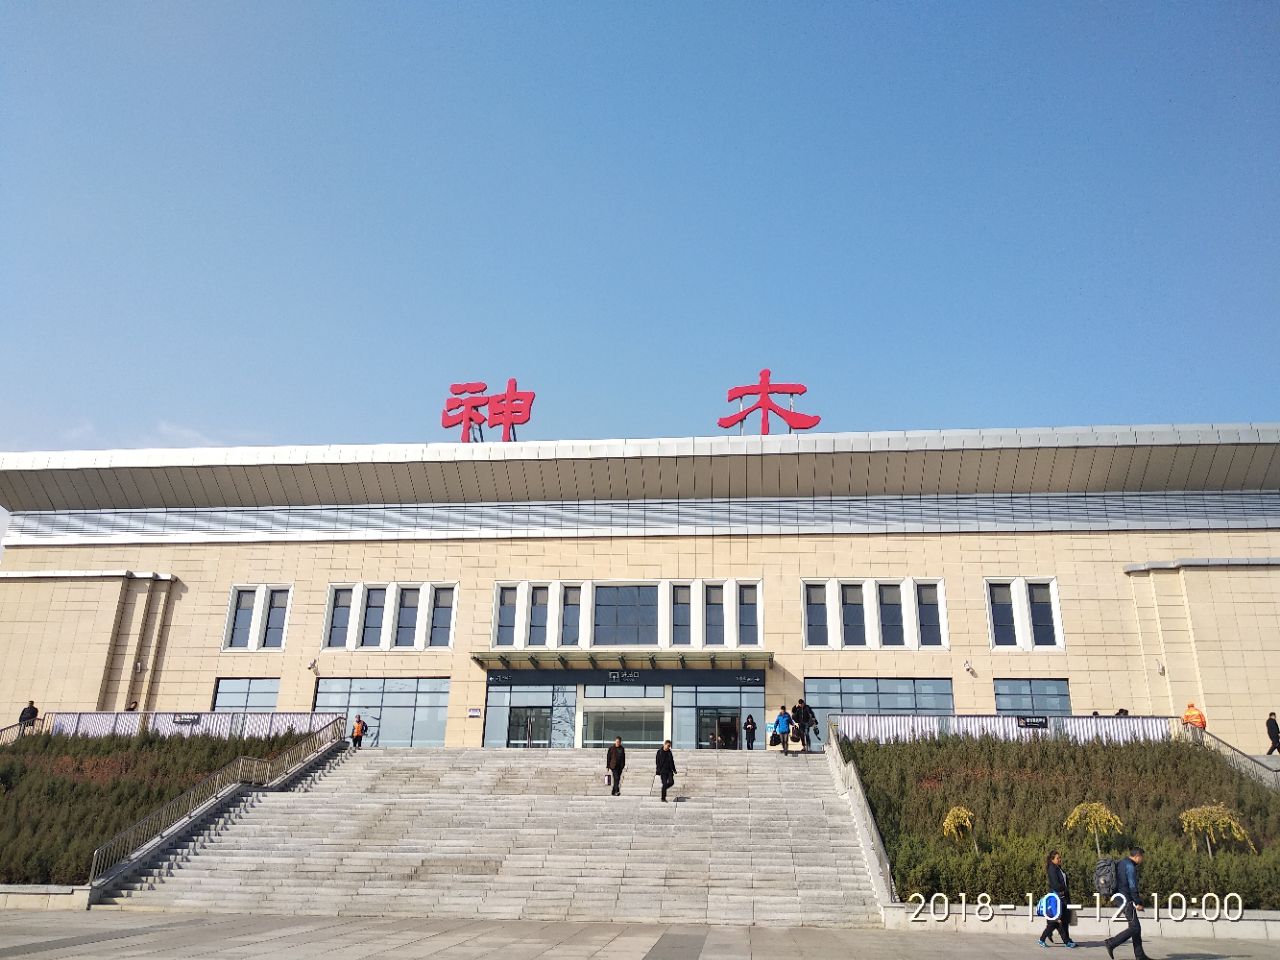 神木火车站,位于陕西省北部的神木市,属于神延铁路(神大铁路,神木北站